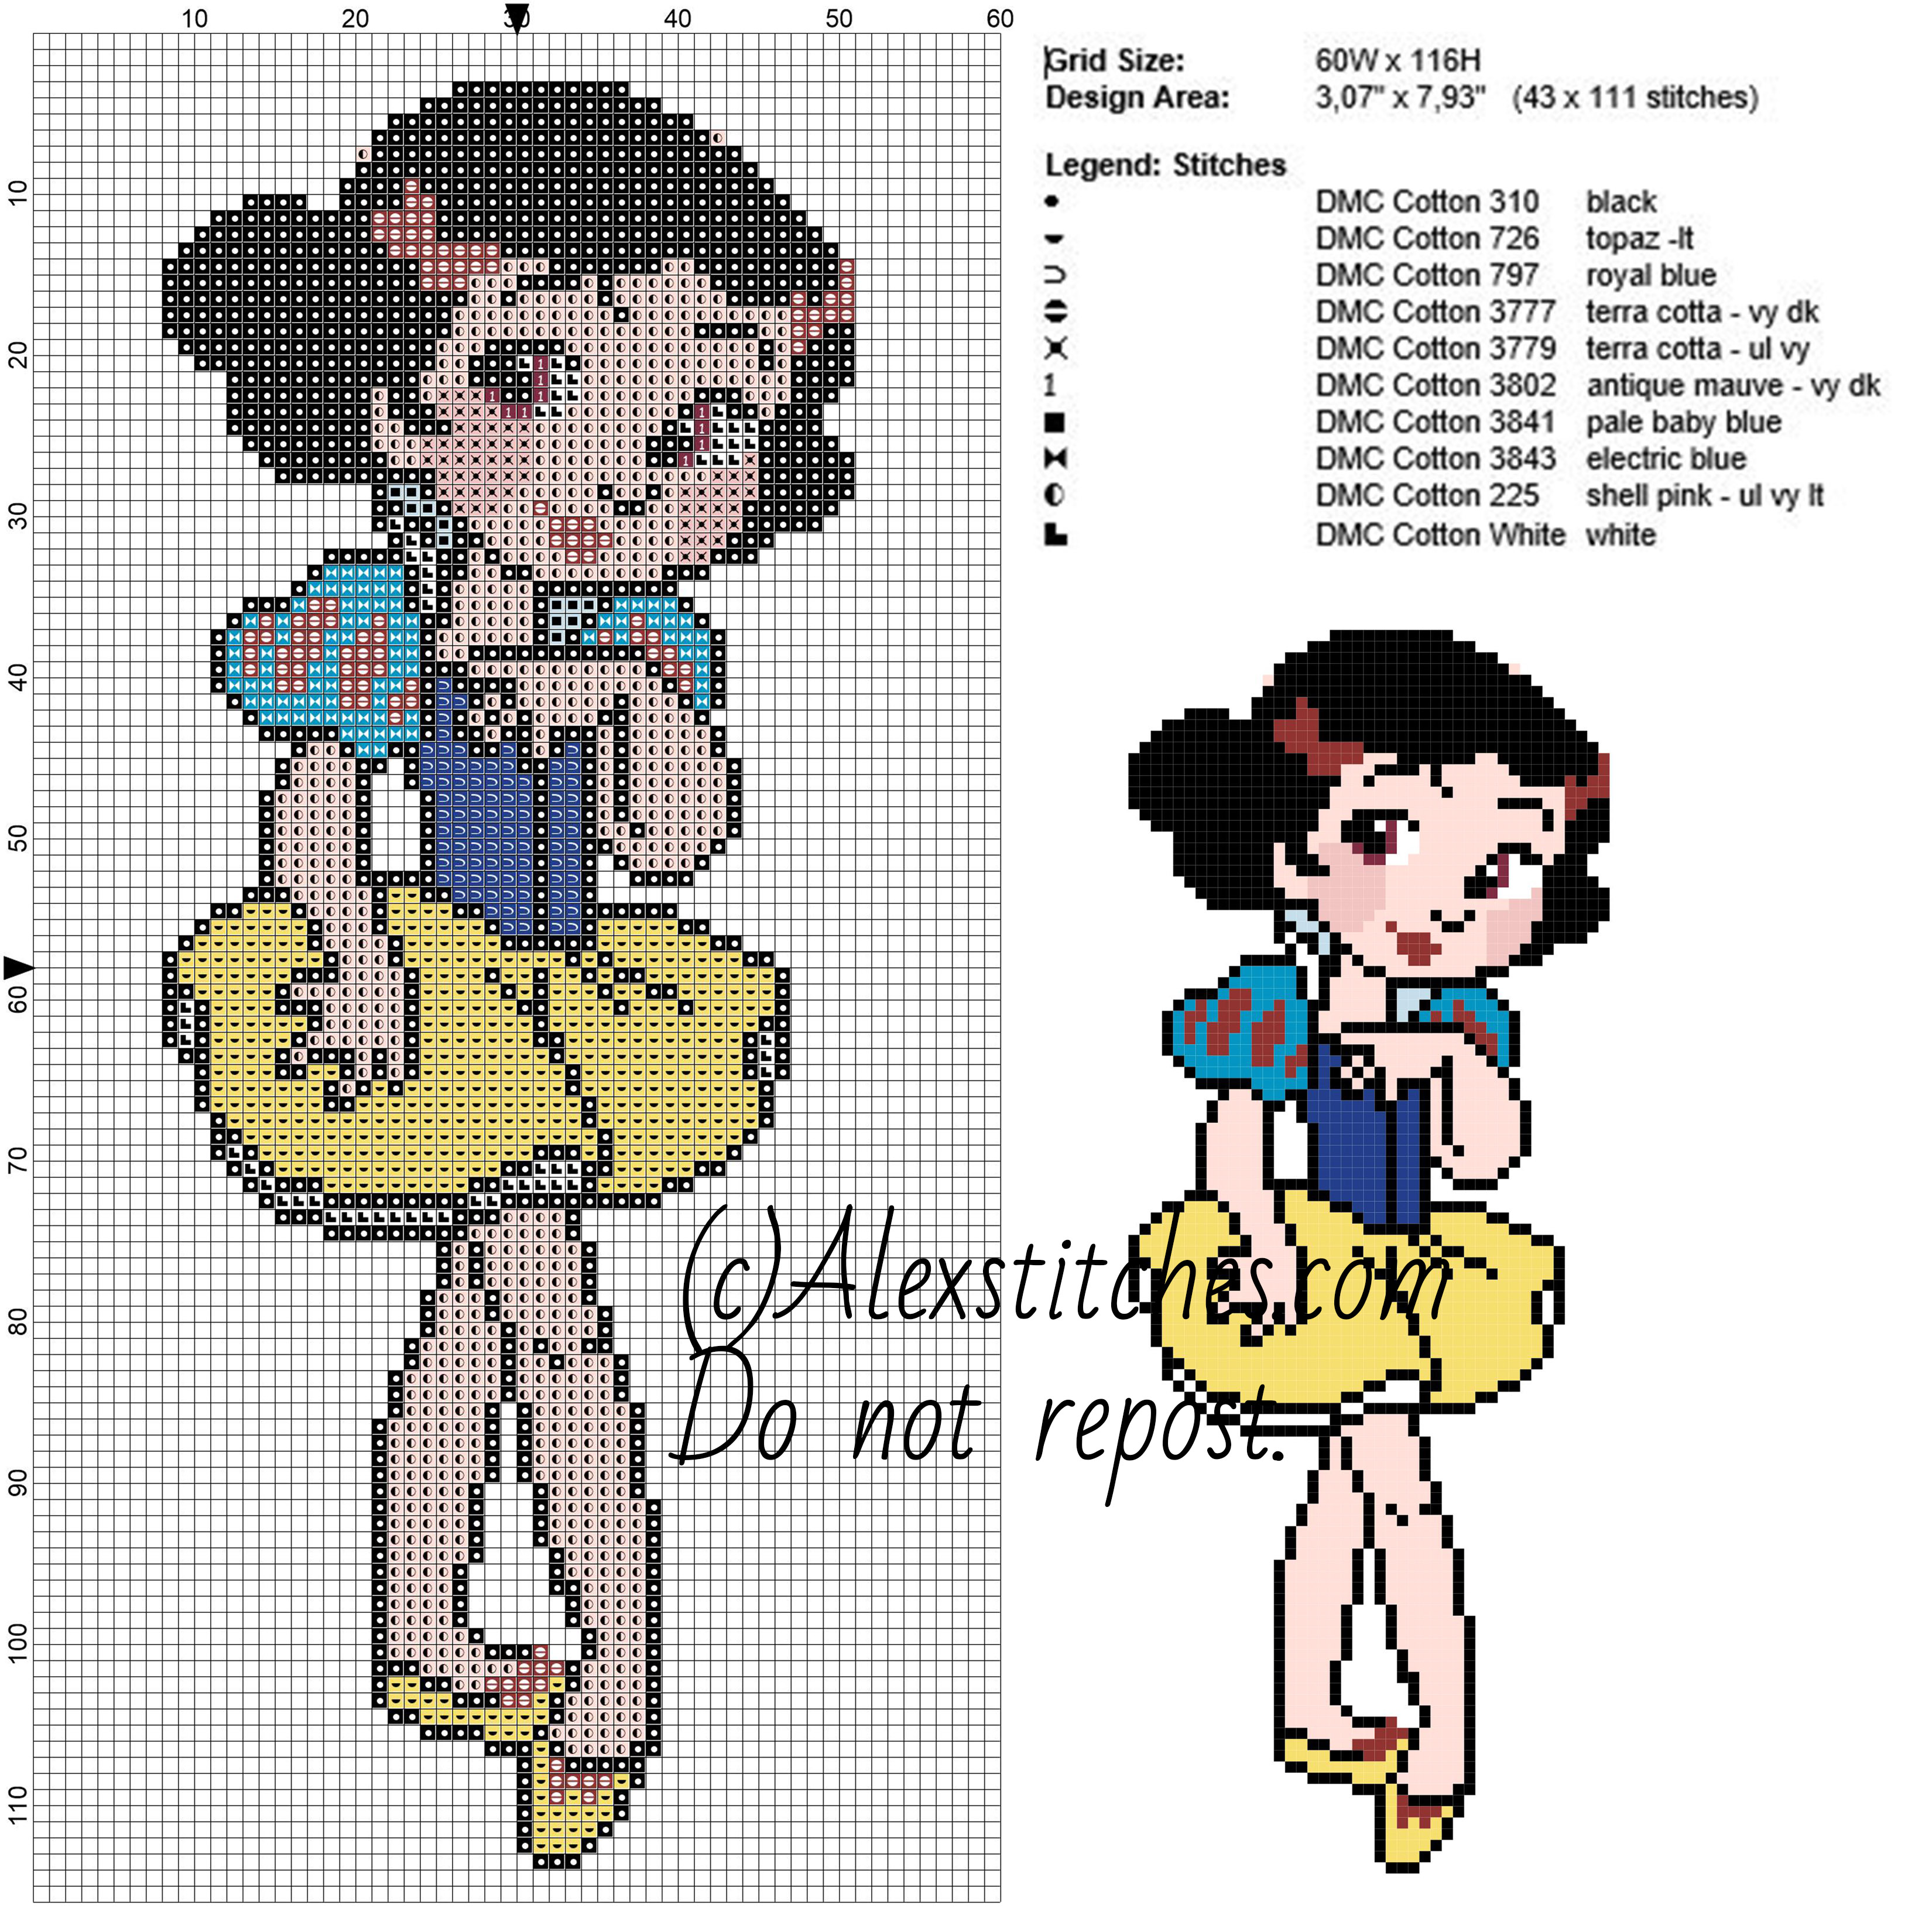 Little Snow White Disney princess 60x166 10 colors